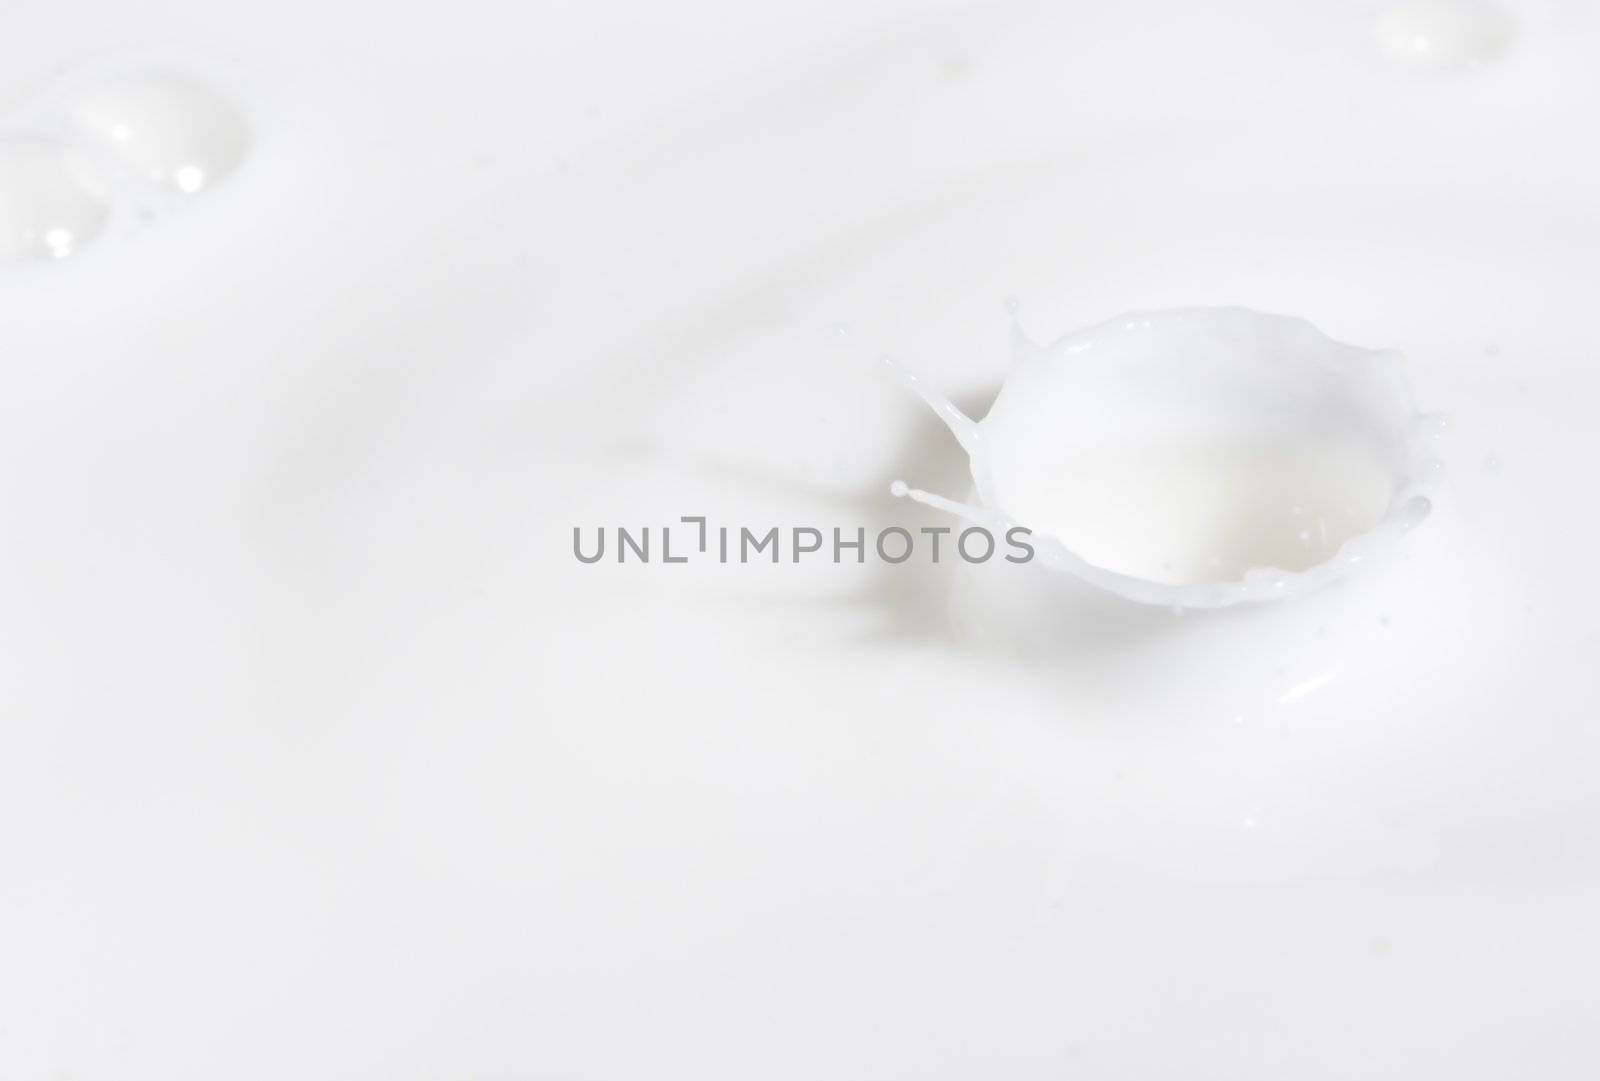 a drop splash of withe liquid or milk